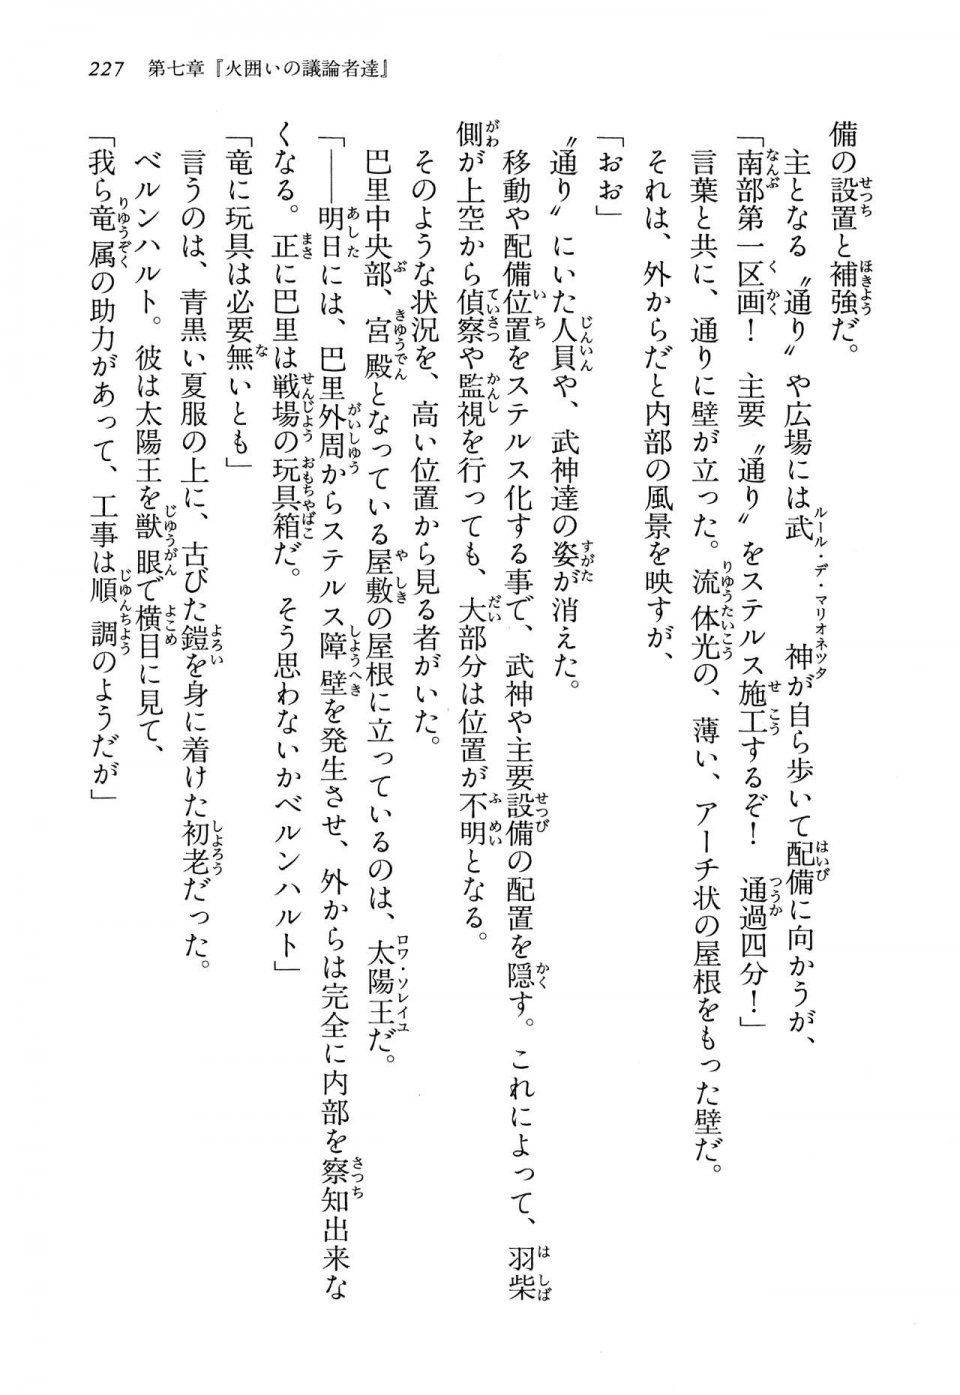 Kyoukai Senjou no Horizon LN Vol 13(6A) - Photo #227